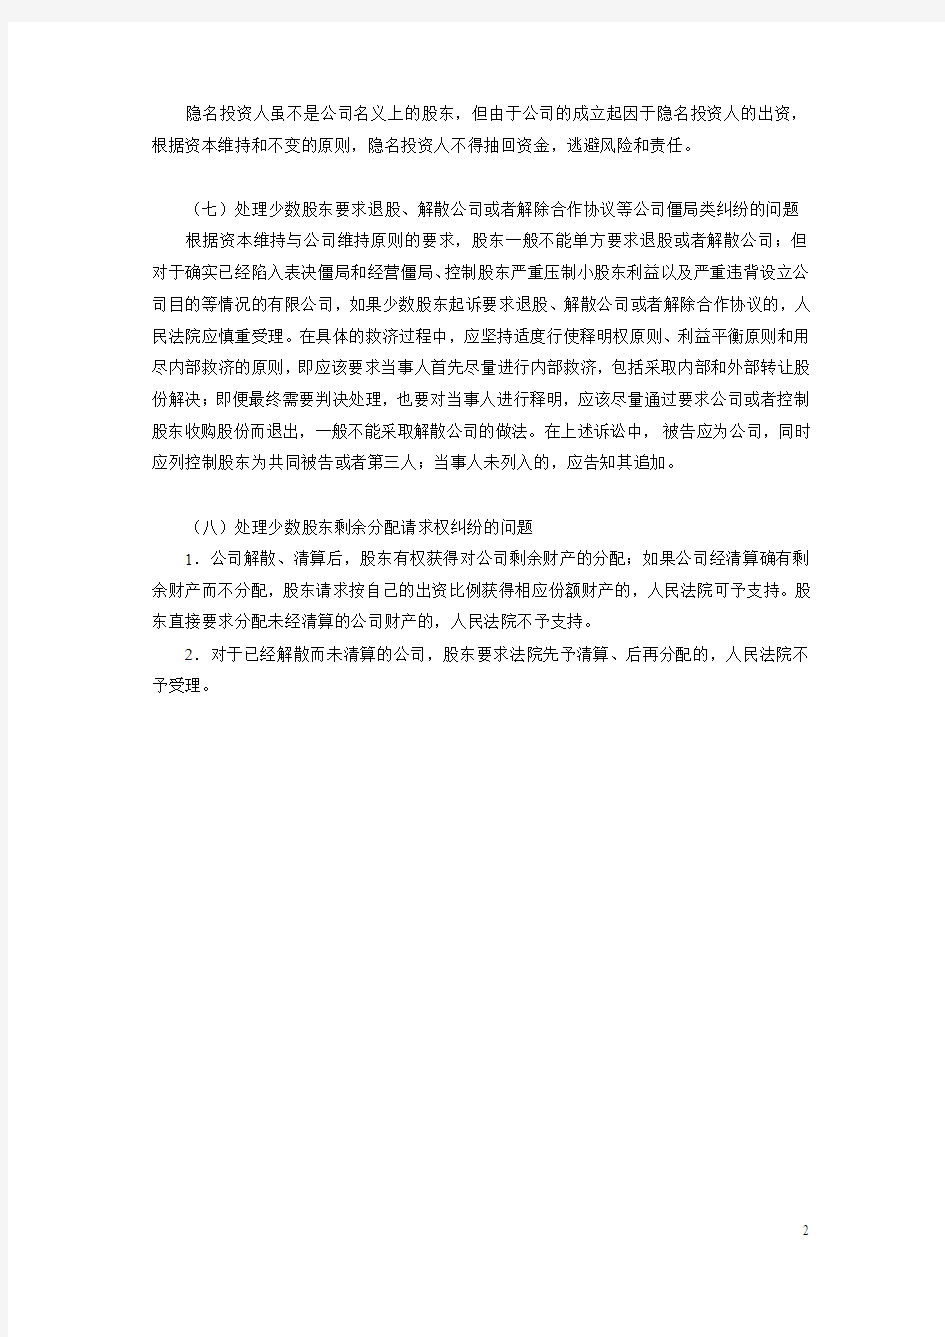 上海市高级人民法院关于审理涉及公司诉讼案件若干问题的处理意见(三)